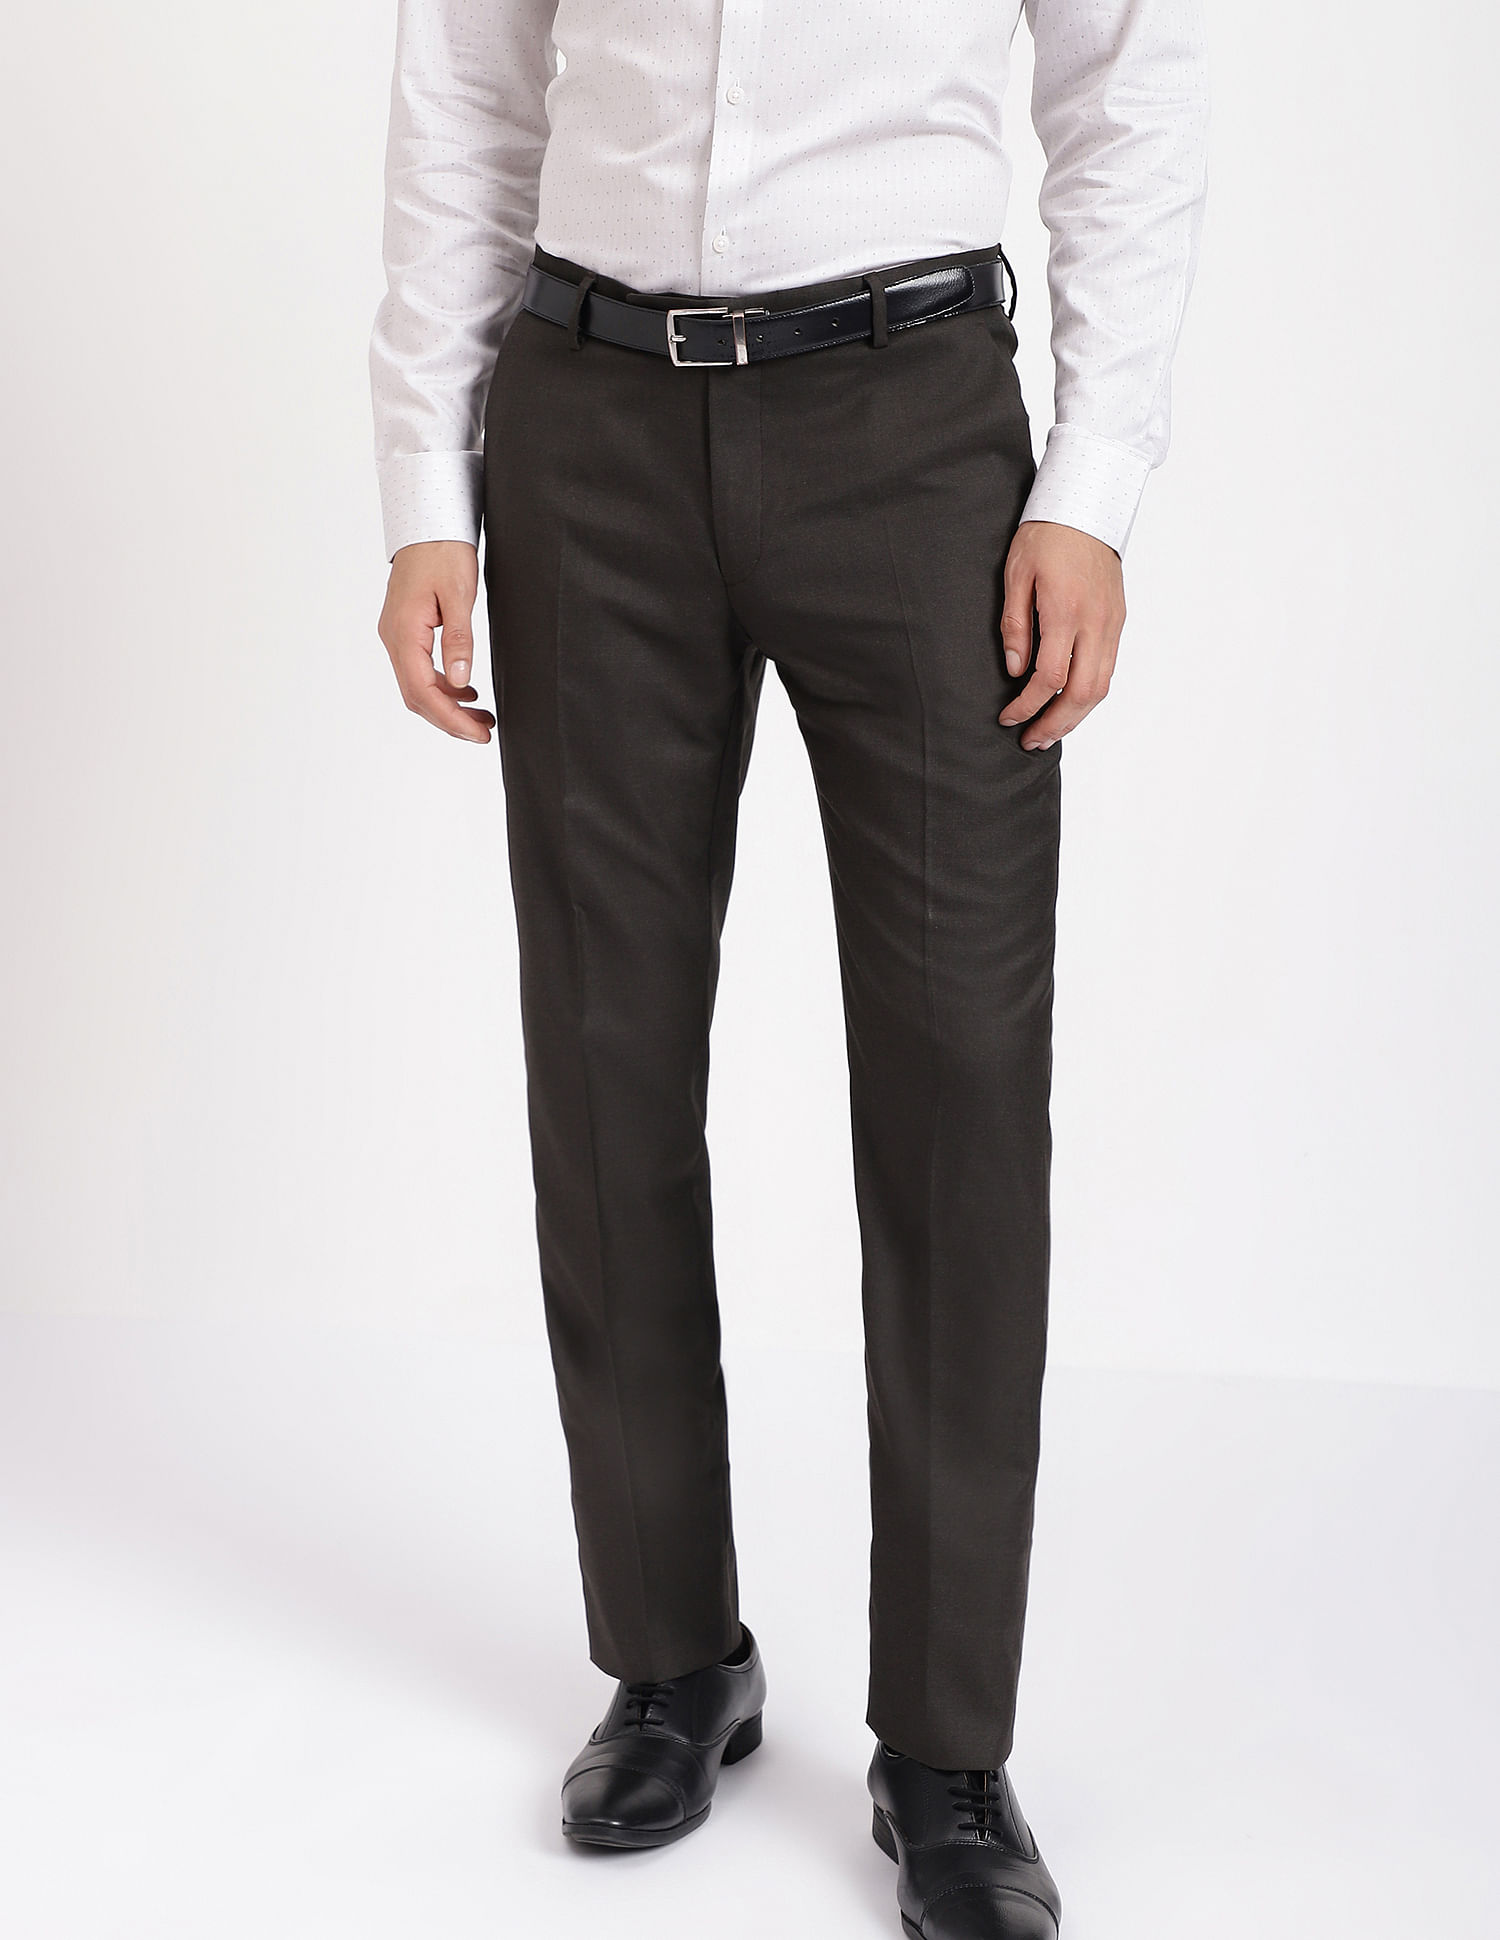 Men Size 32W 30L Dress Pants Dark Gray Aroflex by Arrow | eBay